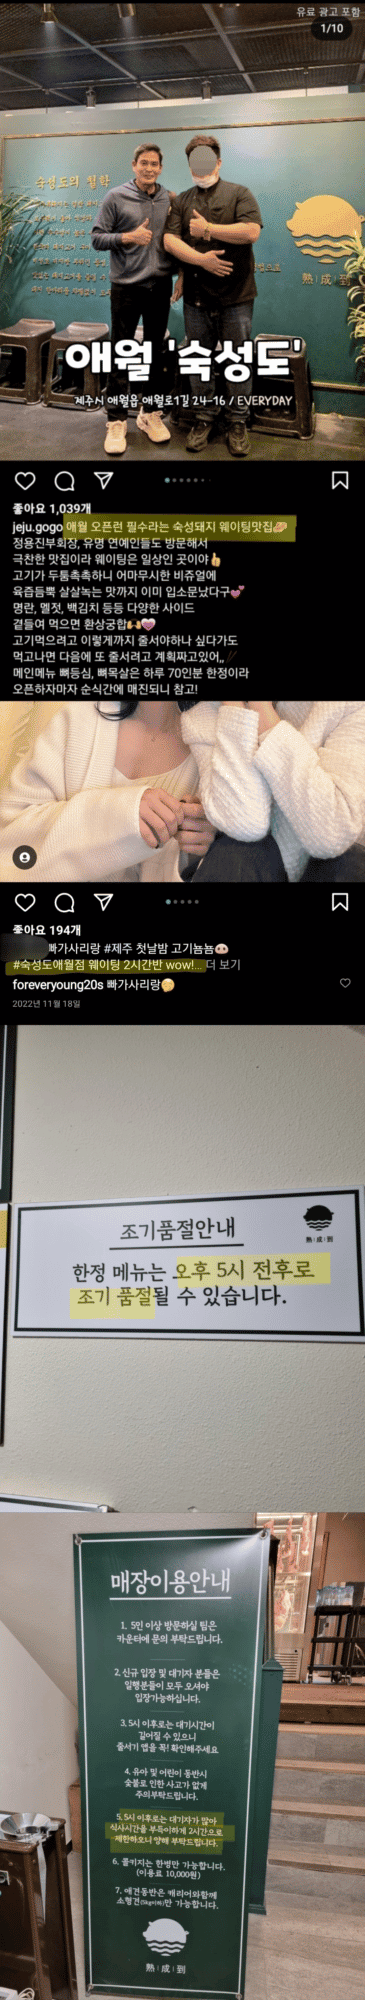 Нетизен привел доказательства, что свидание Чонгука из BTS - фейк